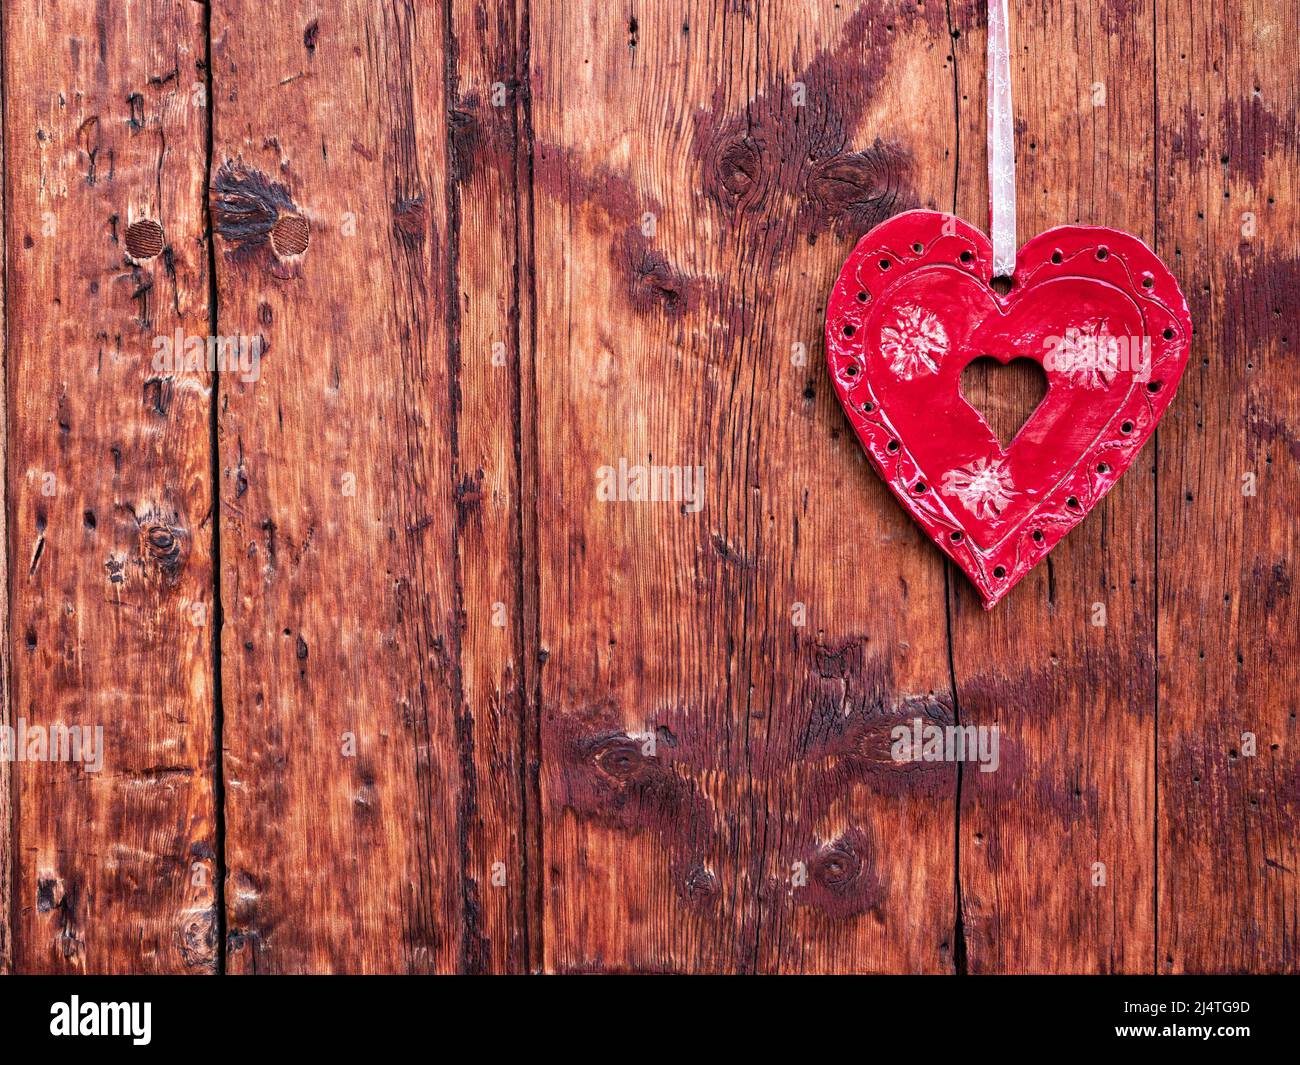 La Punt, Suisse - 29 septembre 2021 : coeur rouge décoratif accroché à un mur en bois Banque D'Images